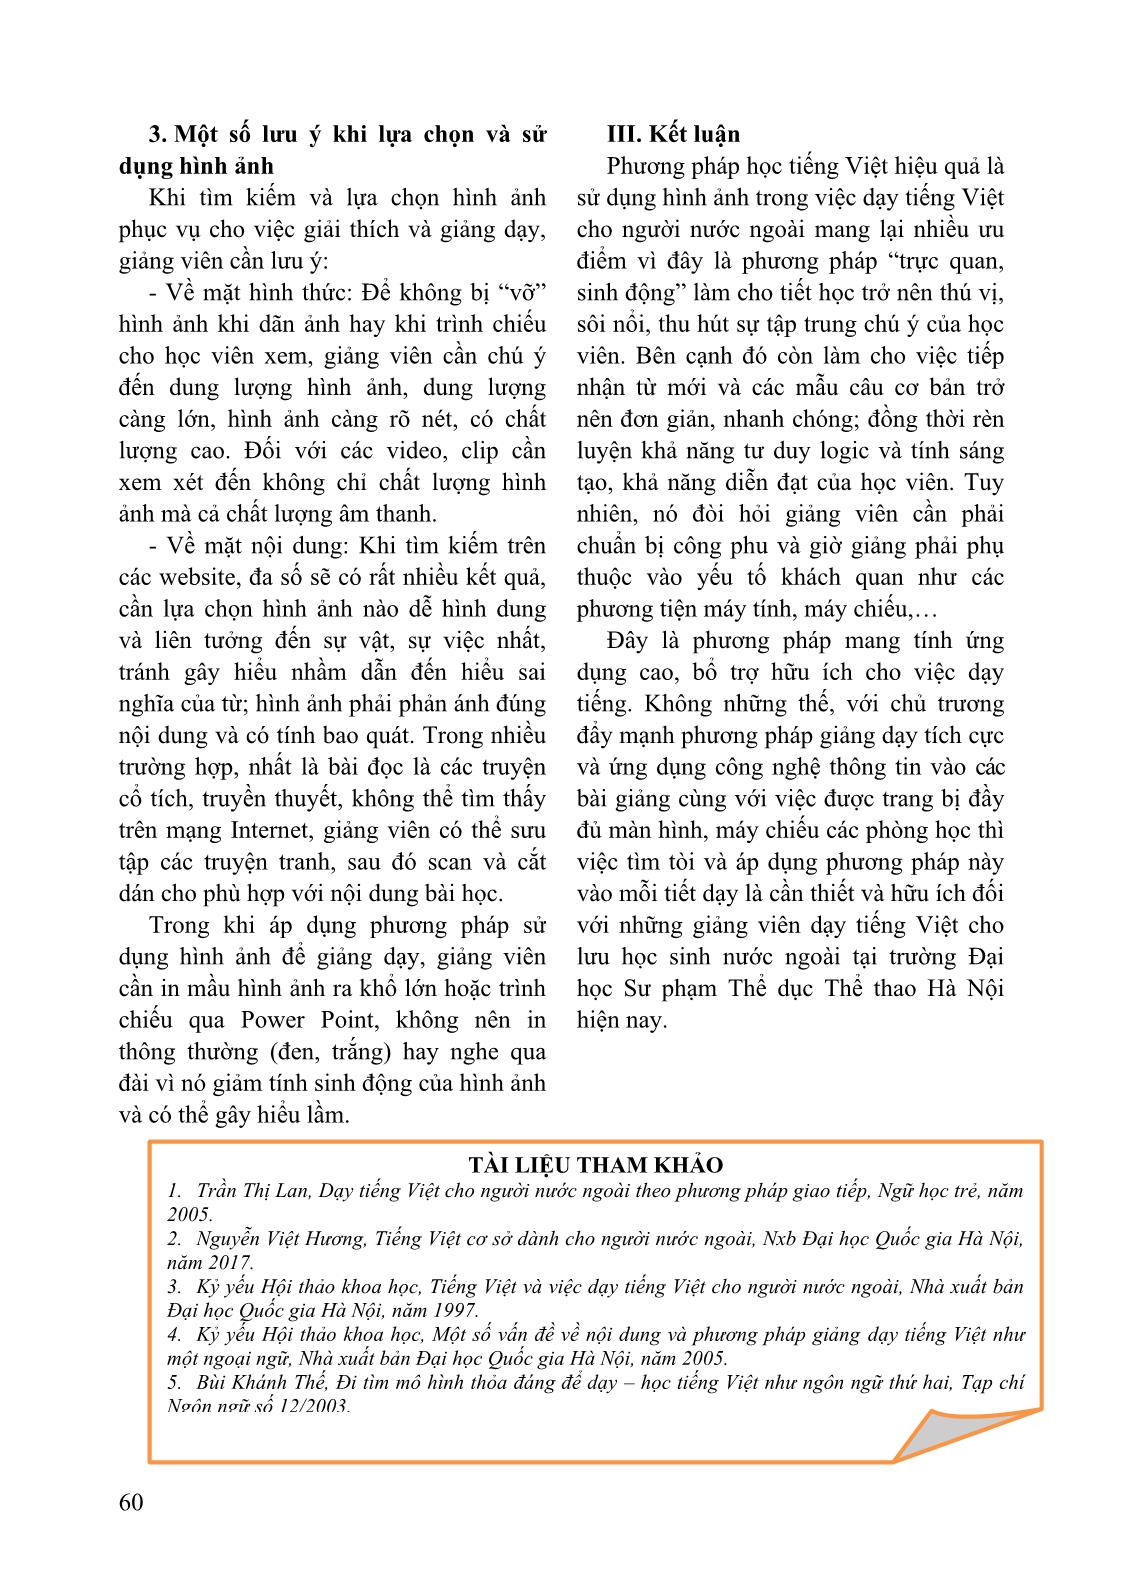 Áp dụng phương pháp dạy tiếng Việt bằng hình ảnh cho Lưu học sinh Lào tại trường Đại học Sư phạm Thể dục Thể thao Hà Nội (tiếng Việt trình độ cơ sở) trang 6